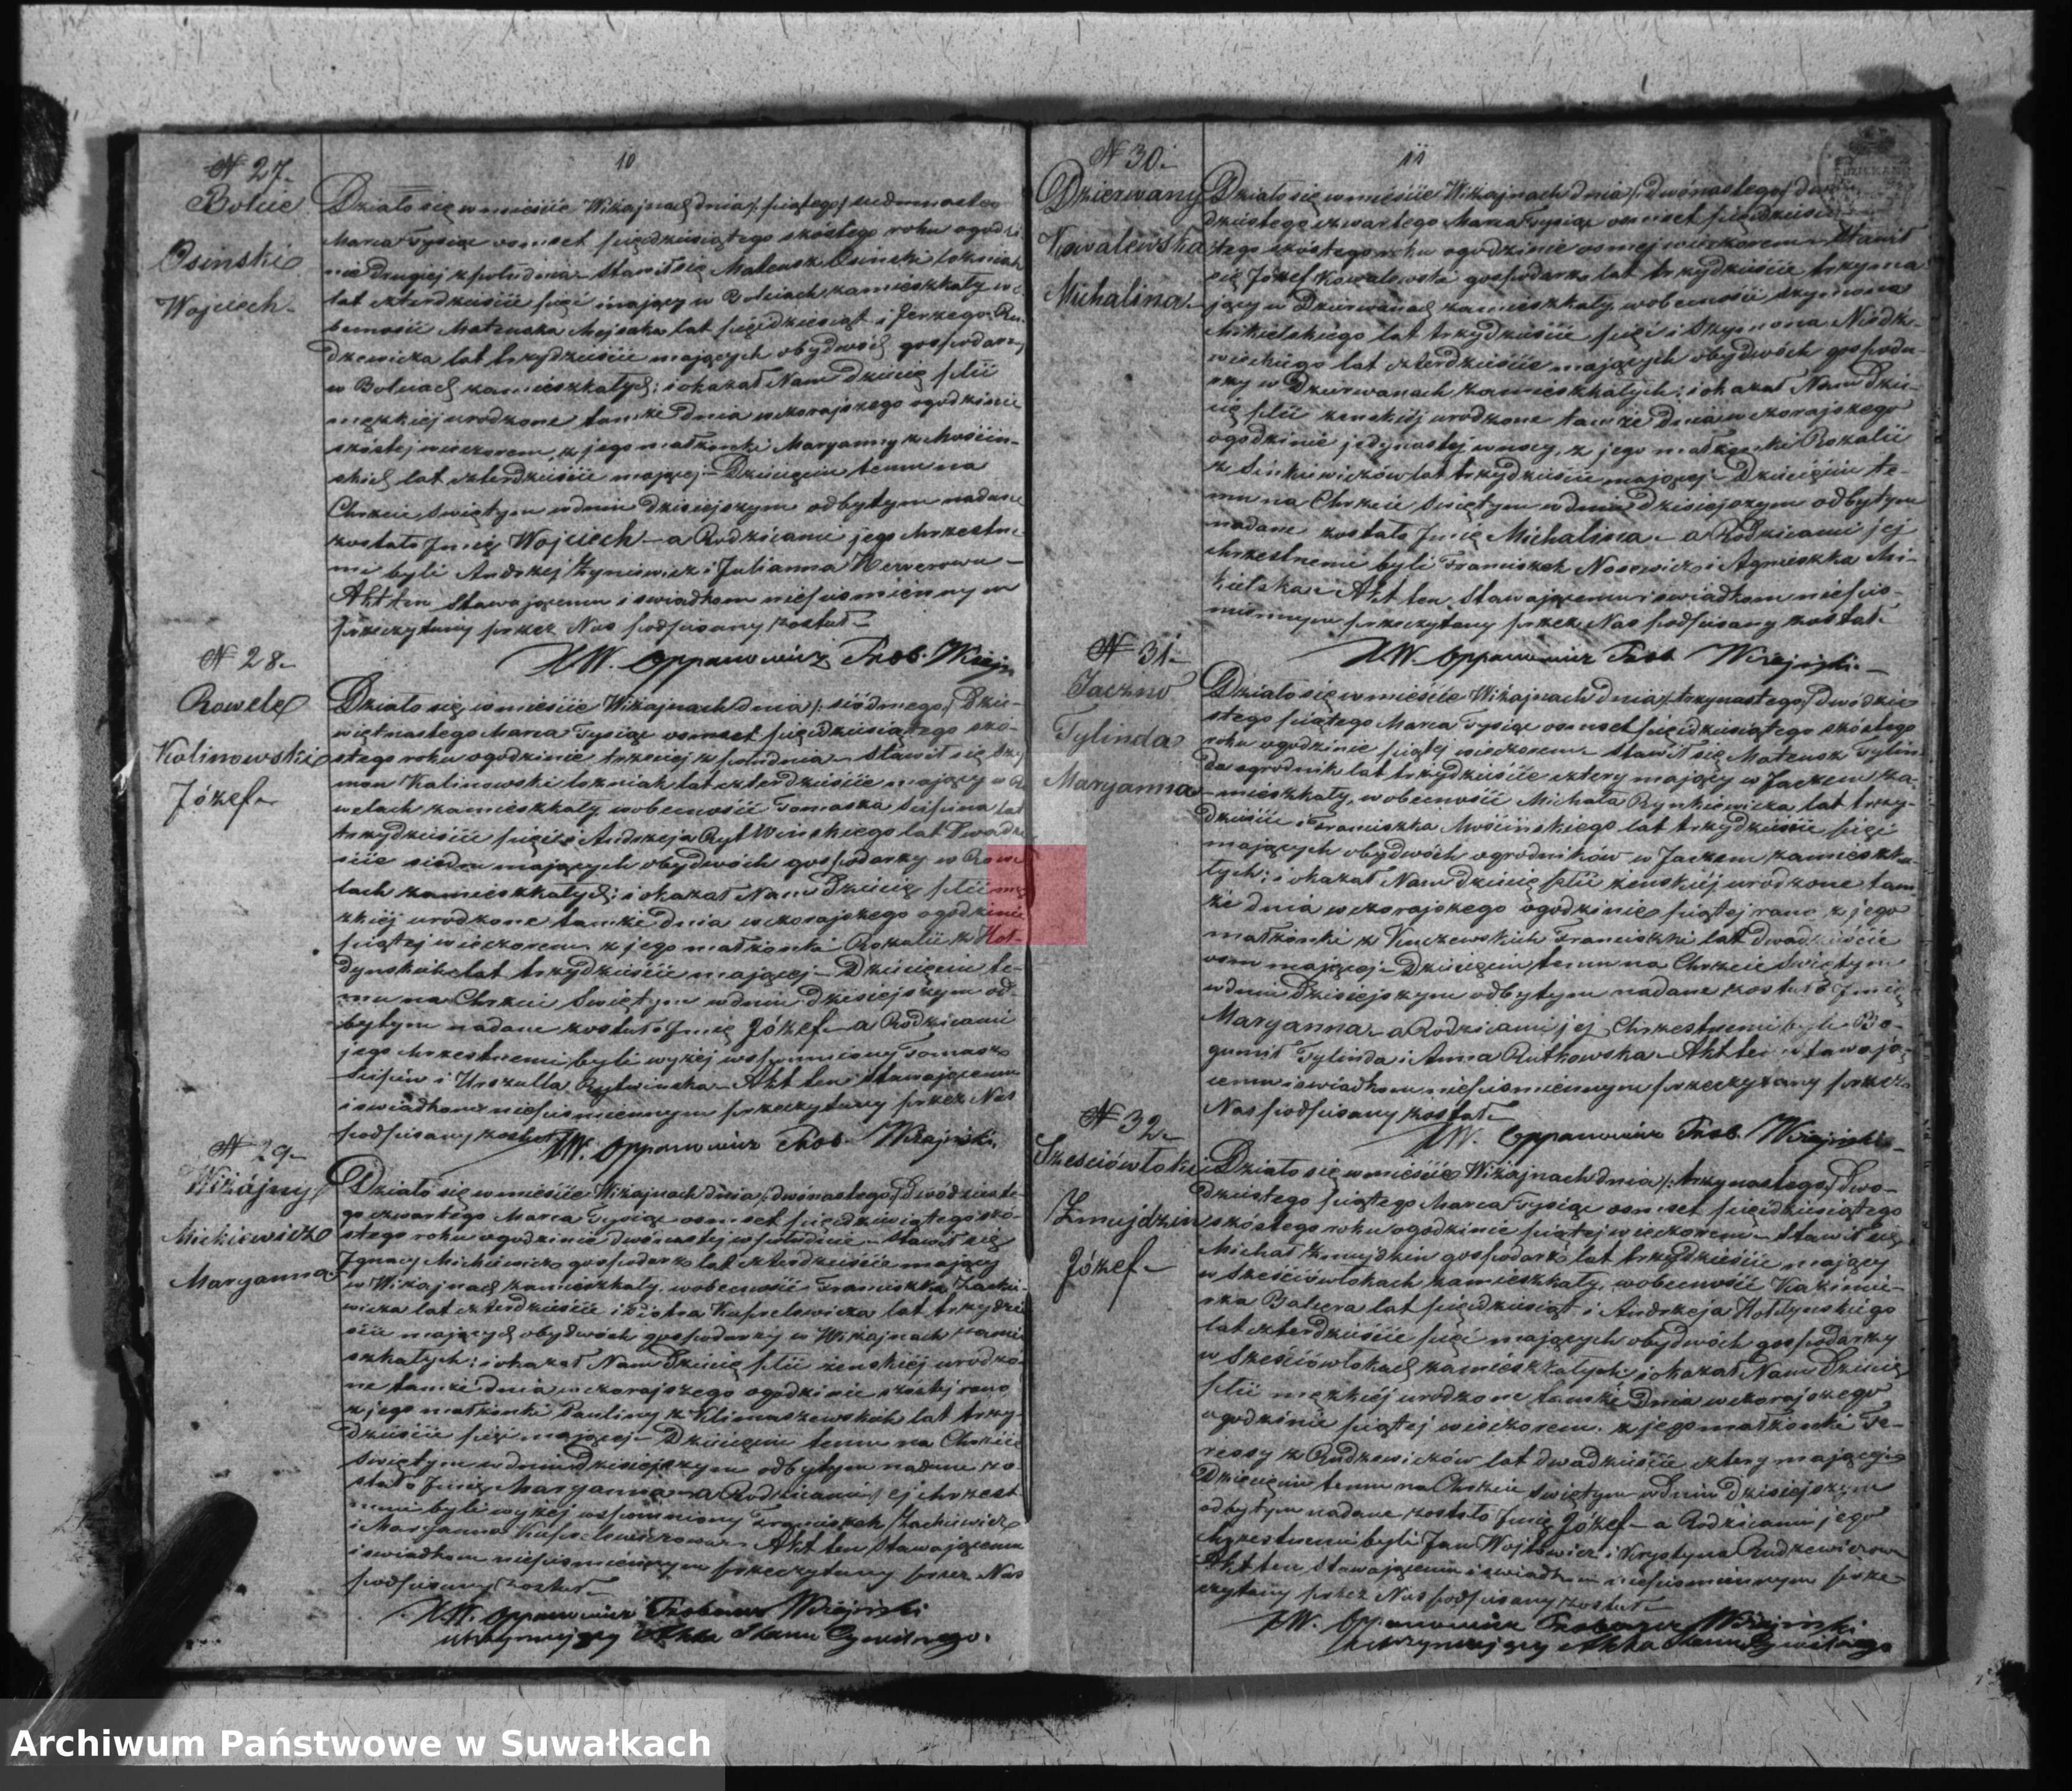 Skan z jednostki: Duplikat urodzonych, zaślubionych i umarłych parafii wiżajńskiej na rok 1856